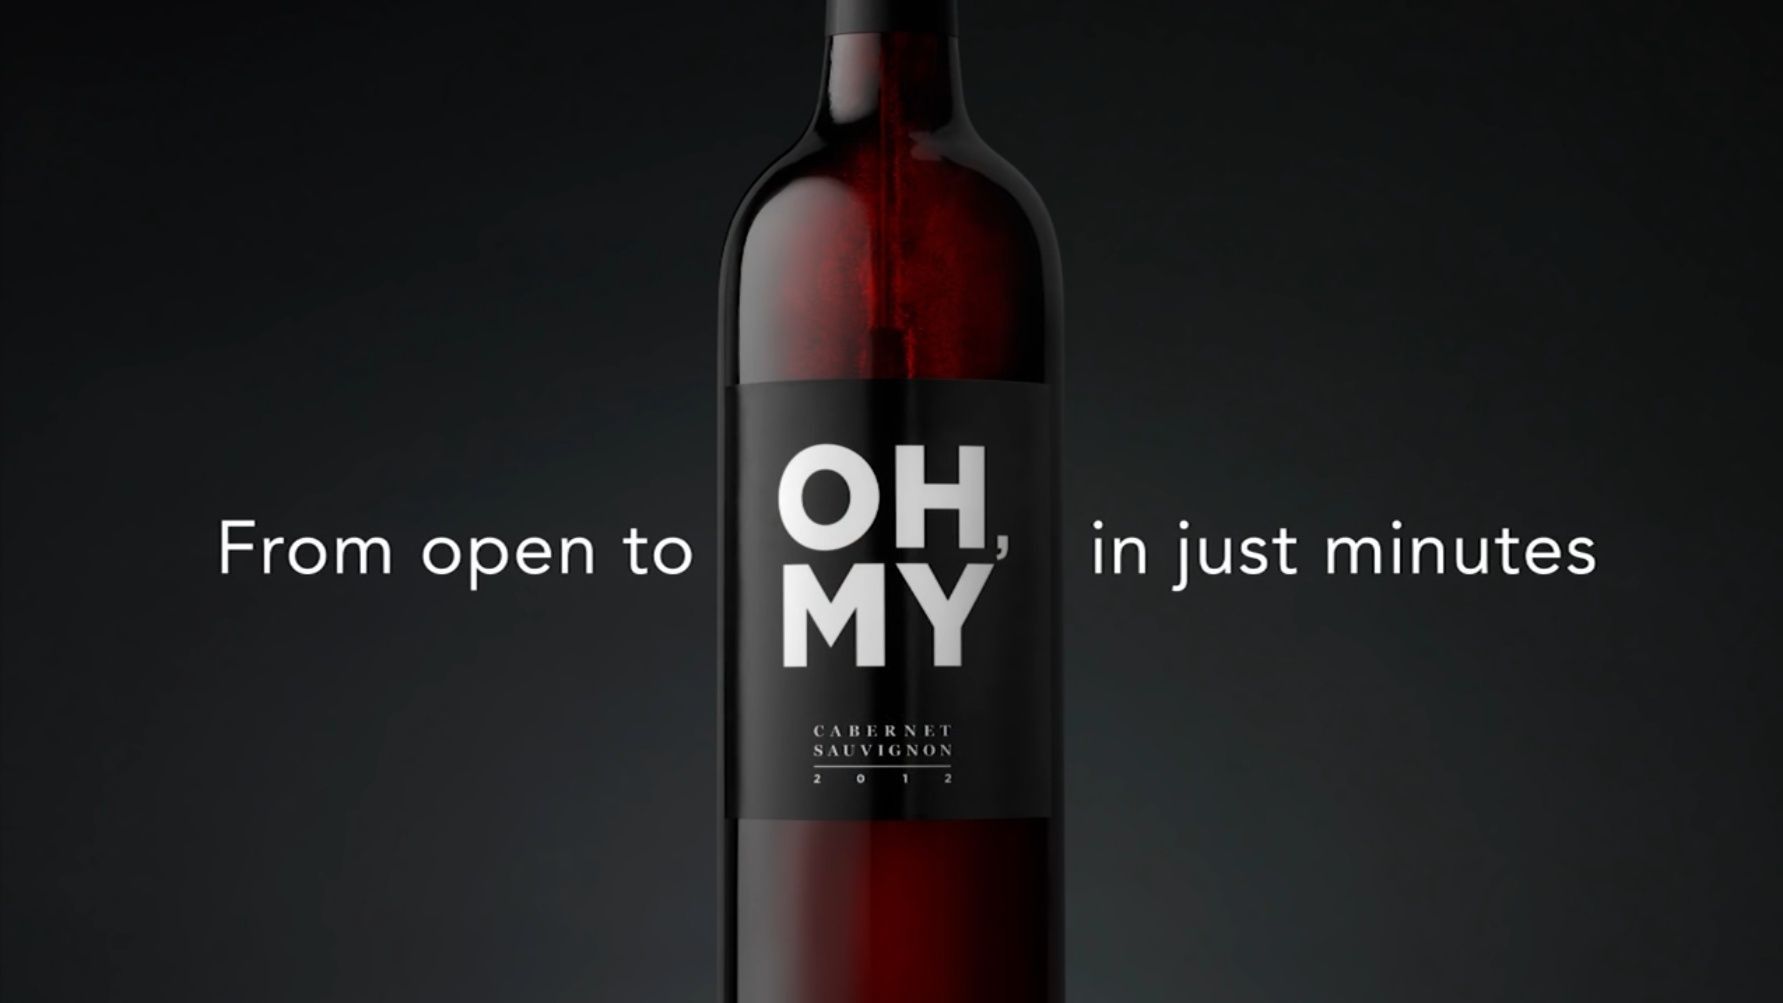 Weinflasche auf schwarzem Grund, Aufschrift: From open to Oh my in just minutes